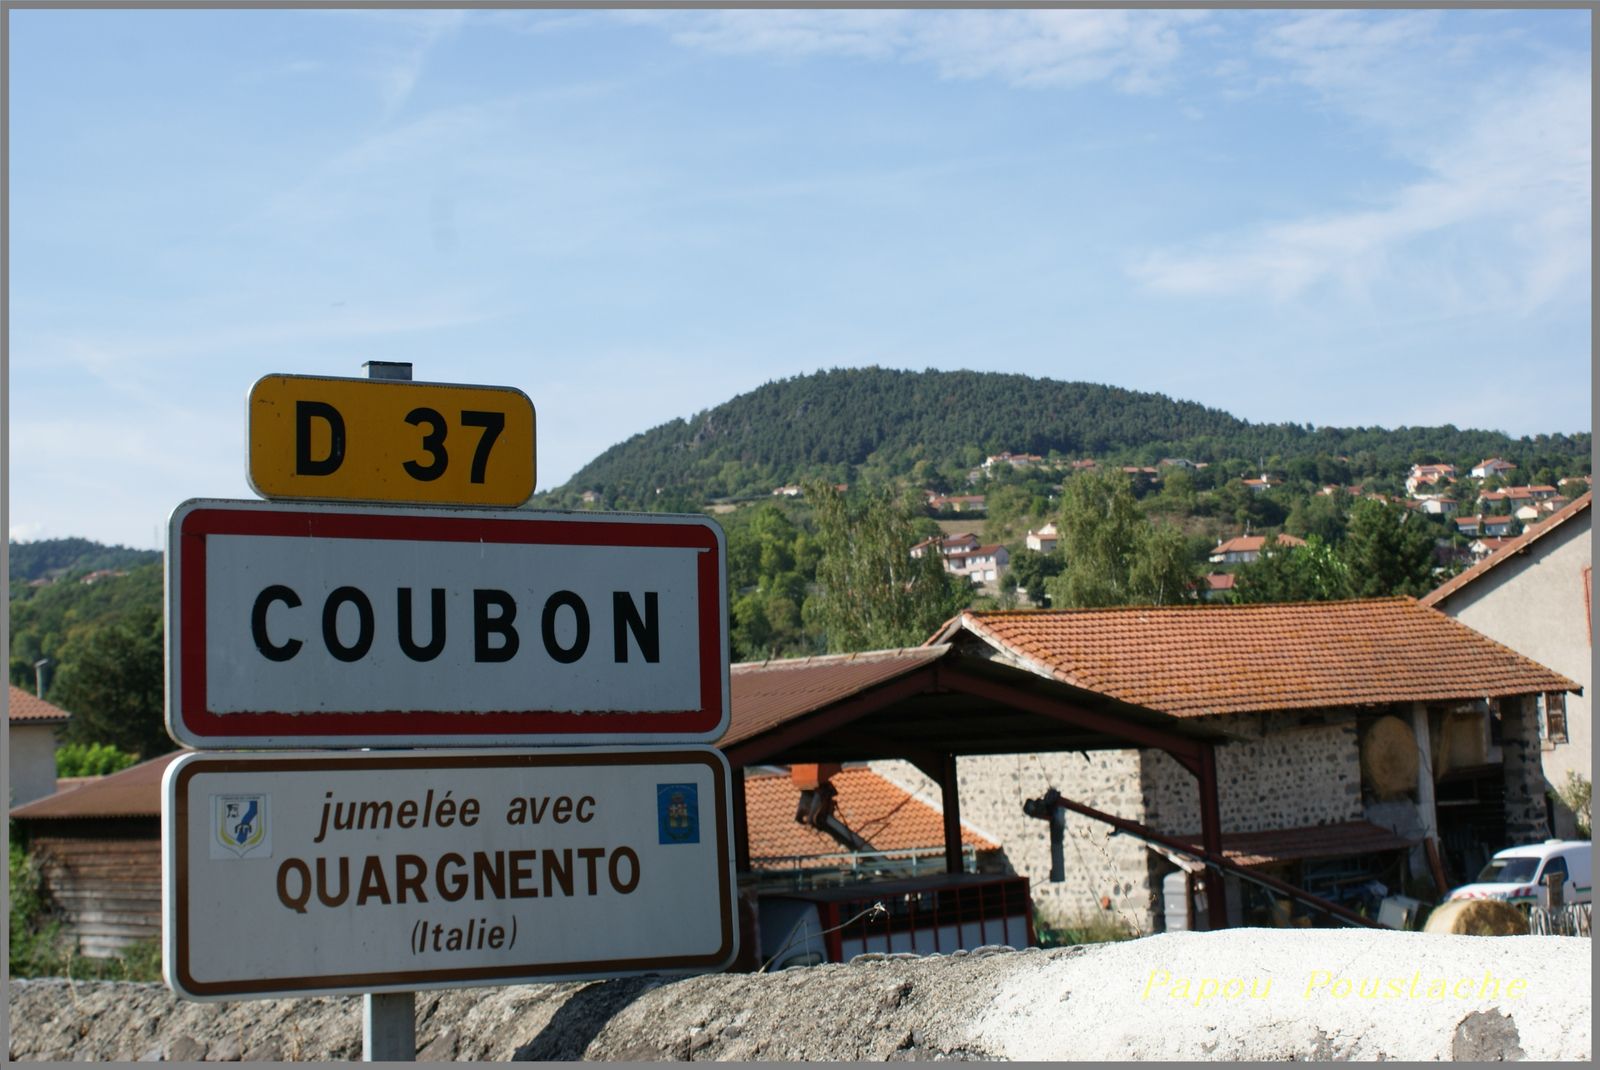 La commune de COUBON se situe en Haute-Loire à proximité du Puy en Velay en région Auvergne Rhône Alpes  Traversée par la Loire, Coubon se situe aussi à quelques kilomètres du Puy-en-Velay (7,7 kms) et de Brives-Charensac (4,6 kms). La commune est traversée par la Laussonne affluent de la Loire.